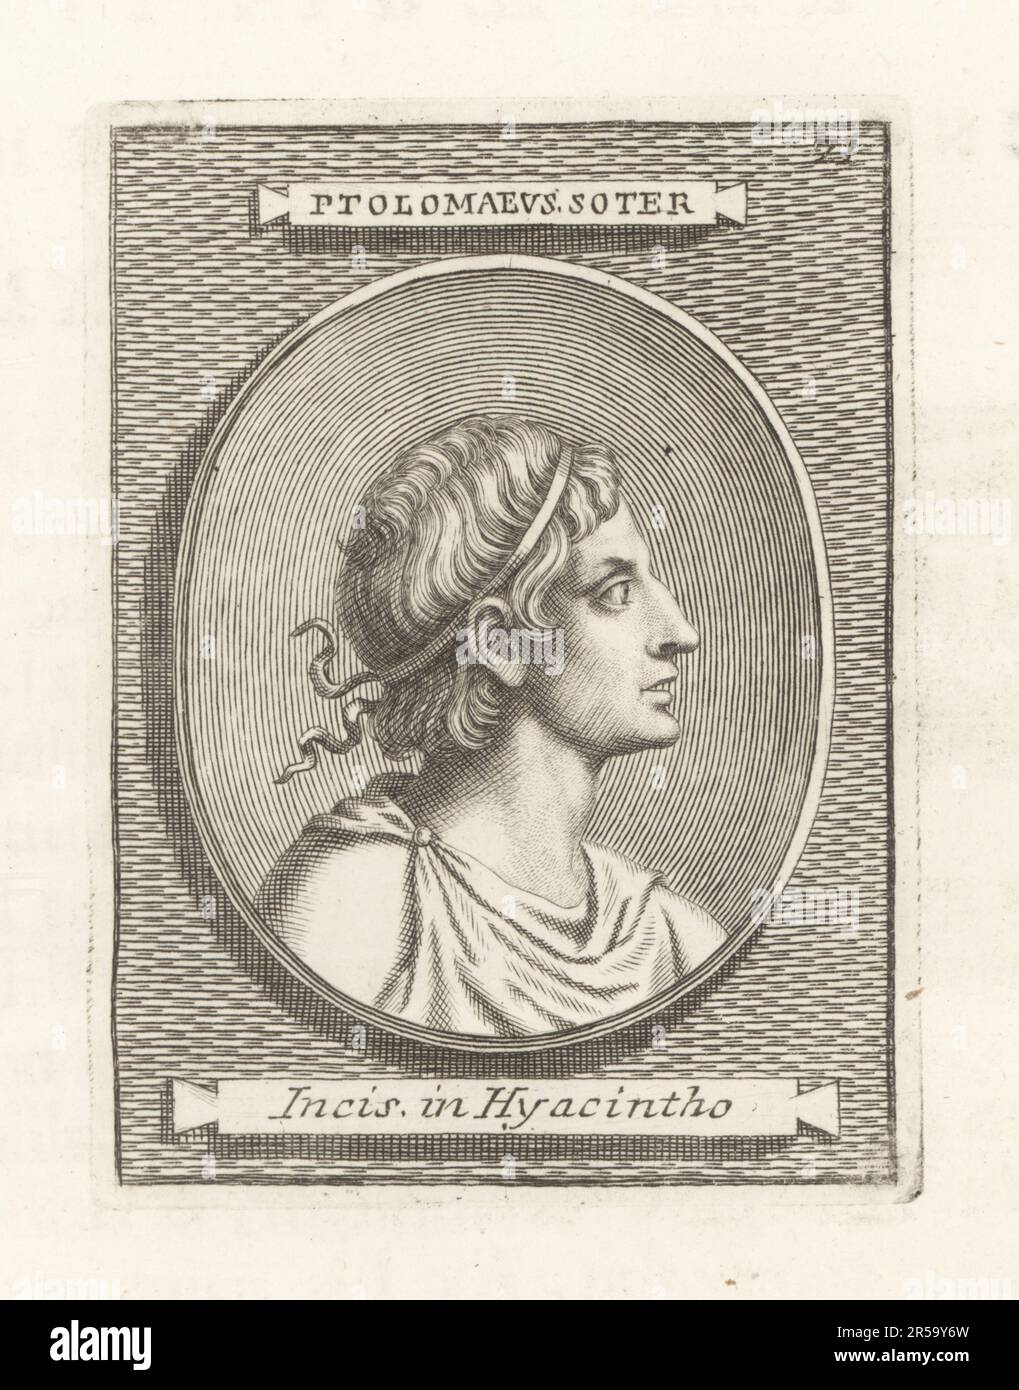 Ptolemy: Iconography of His Portrait - Ptolémée: Iconographie de son  portrait